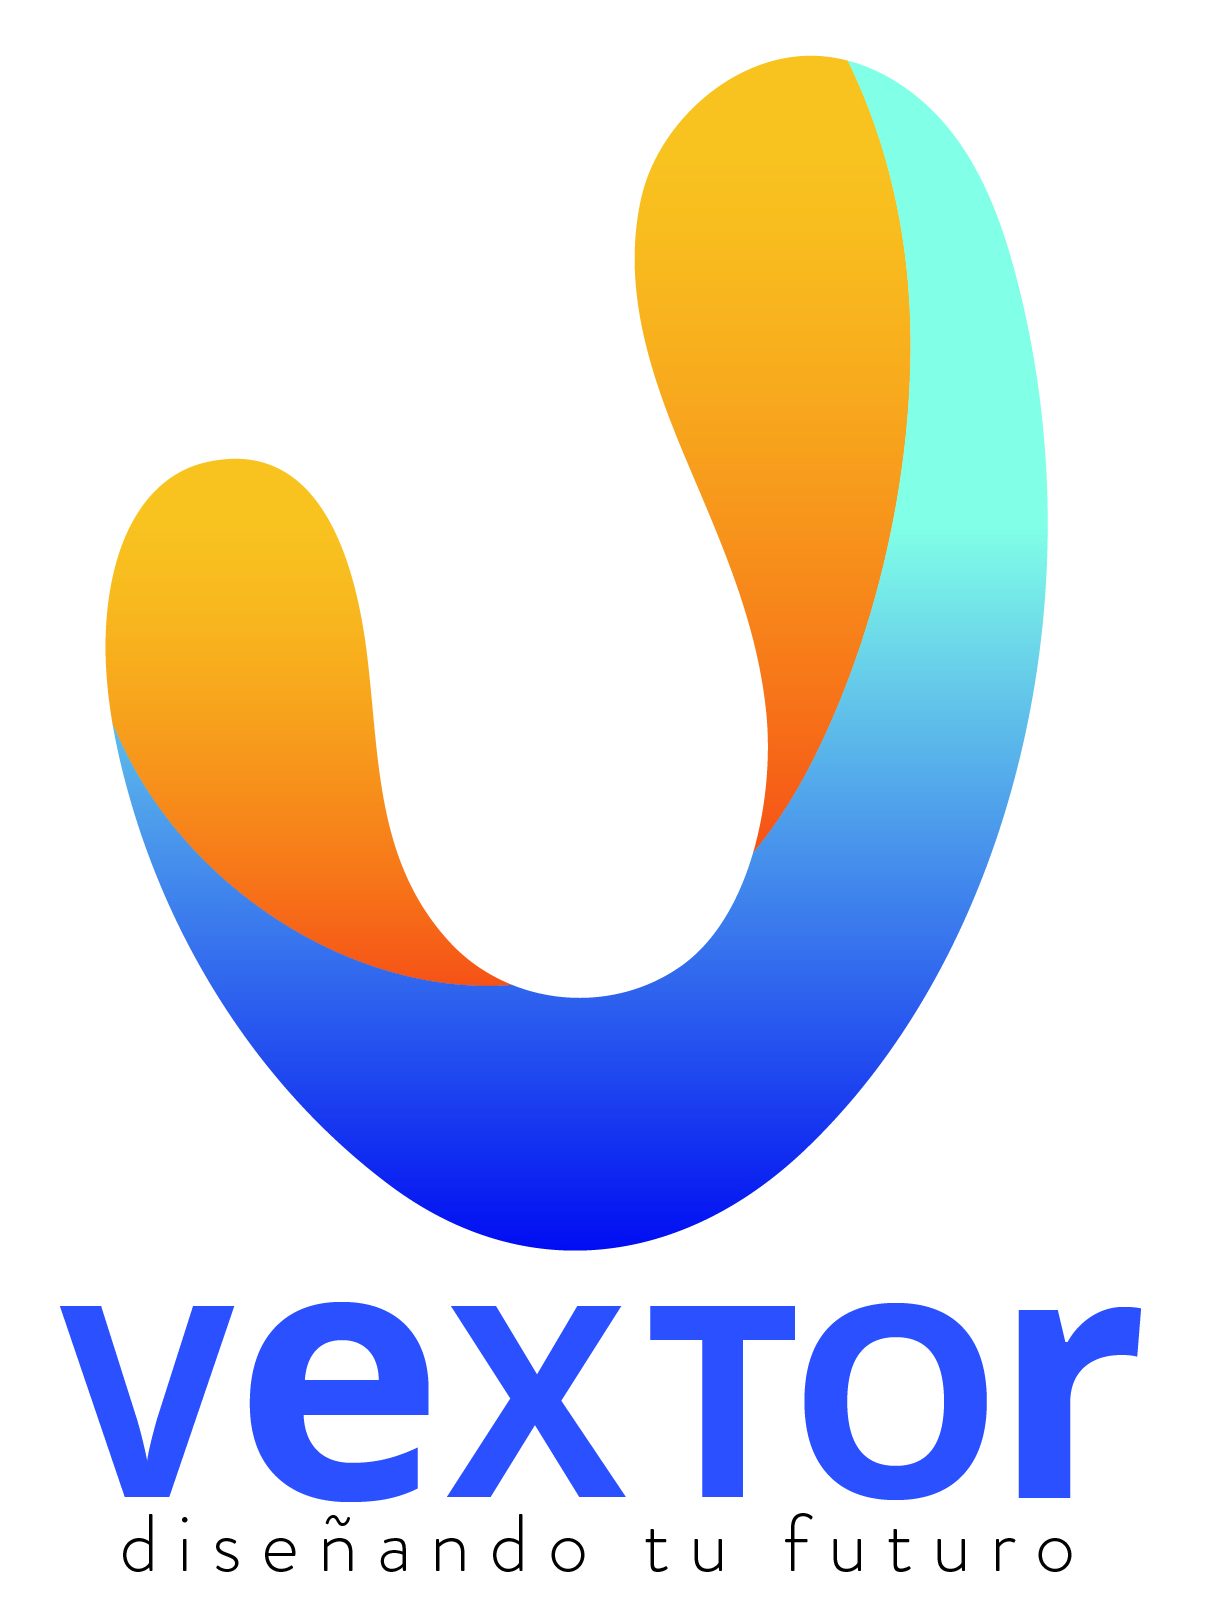 Vextor – Diseñando tu futuro